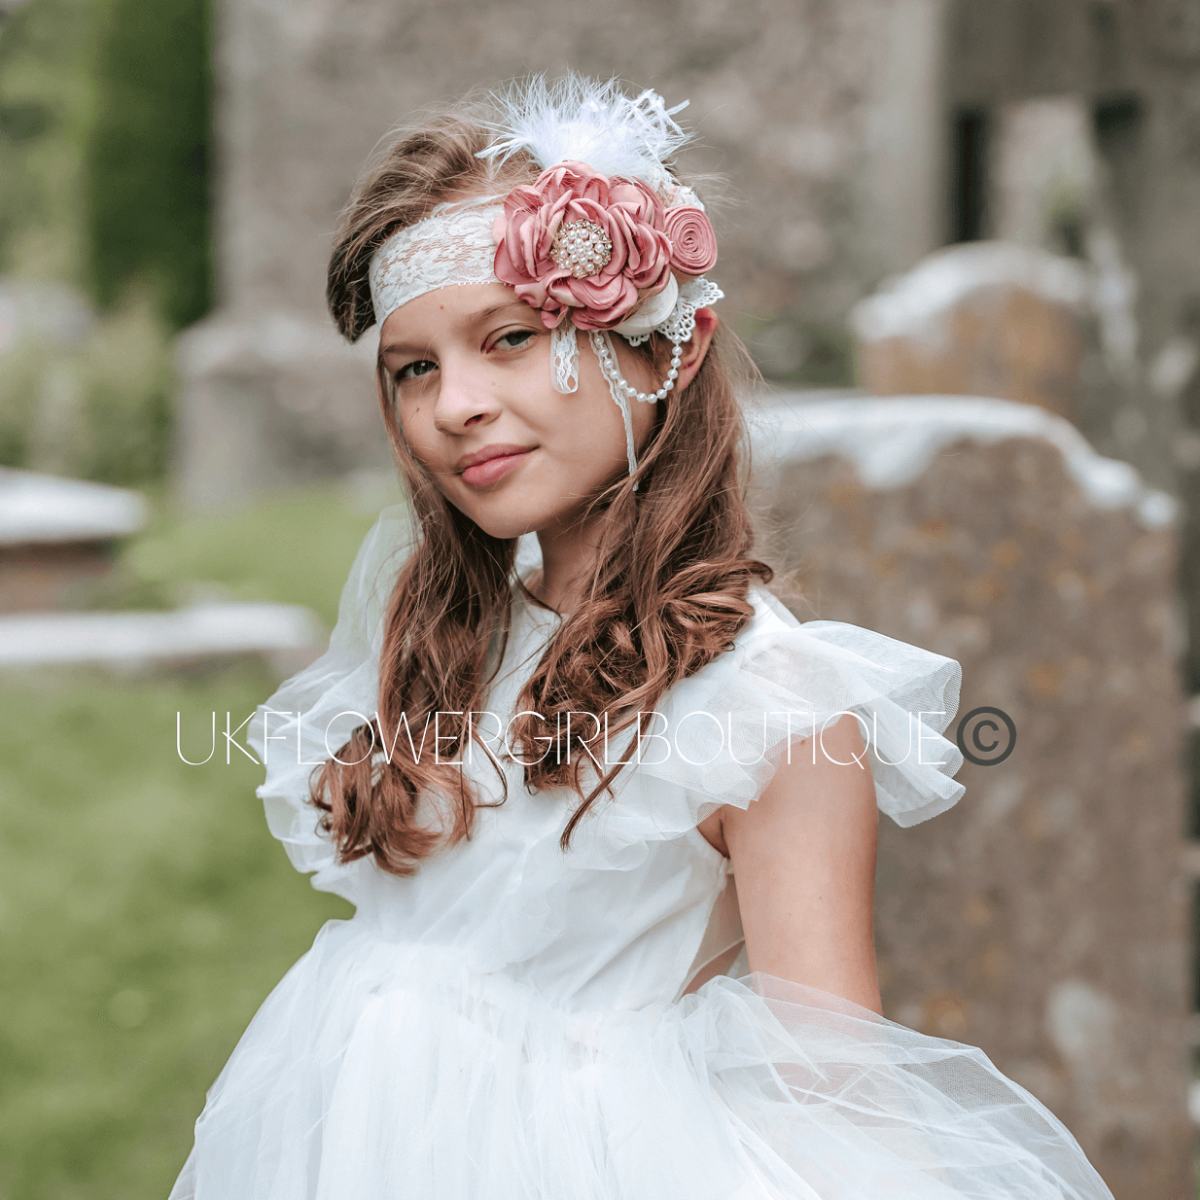 UK FLOWER GIRL BOUTIQUE-Image-31